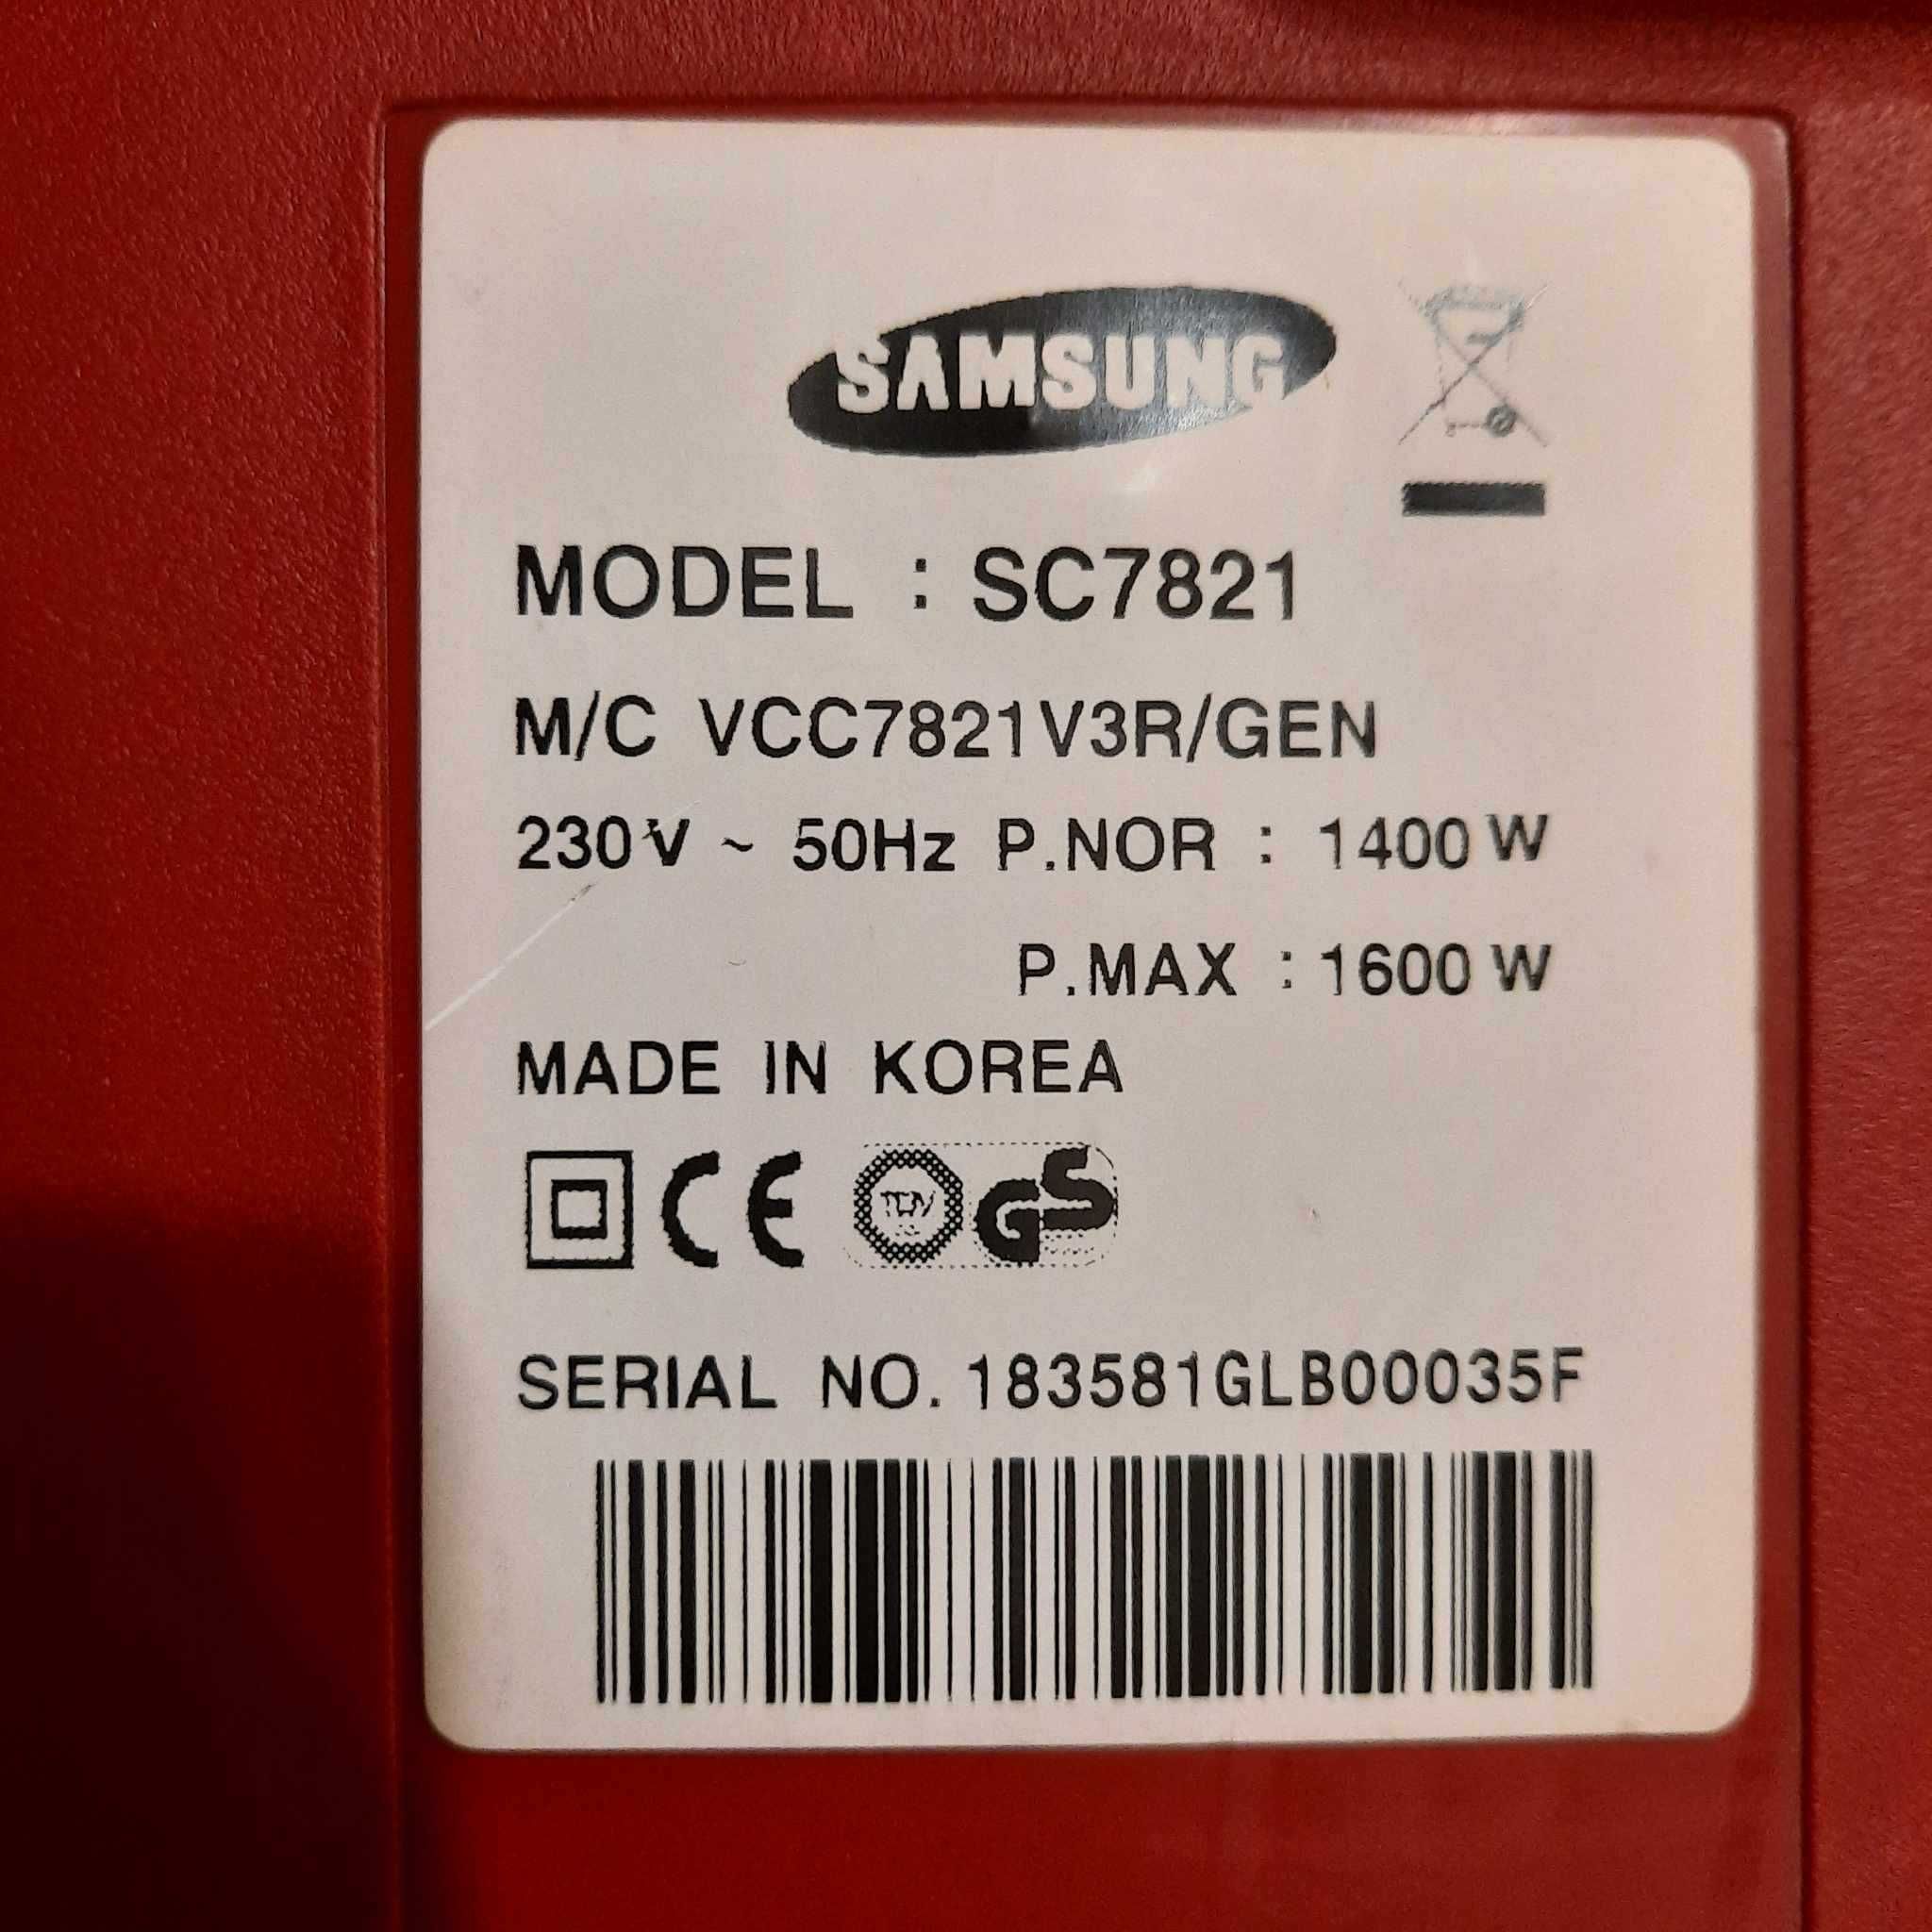 Aspirator Samsung cyclon model SC7821 – defect, pentru piese – 40 lei